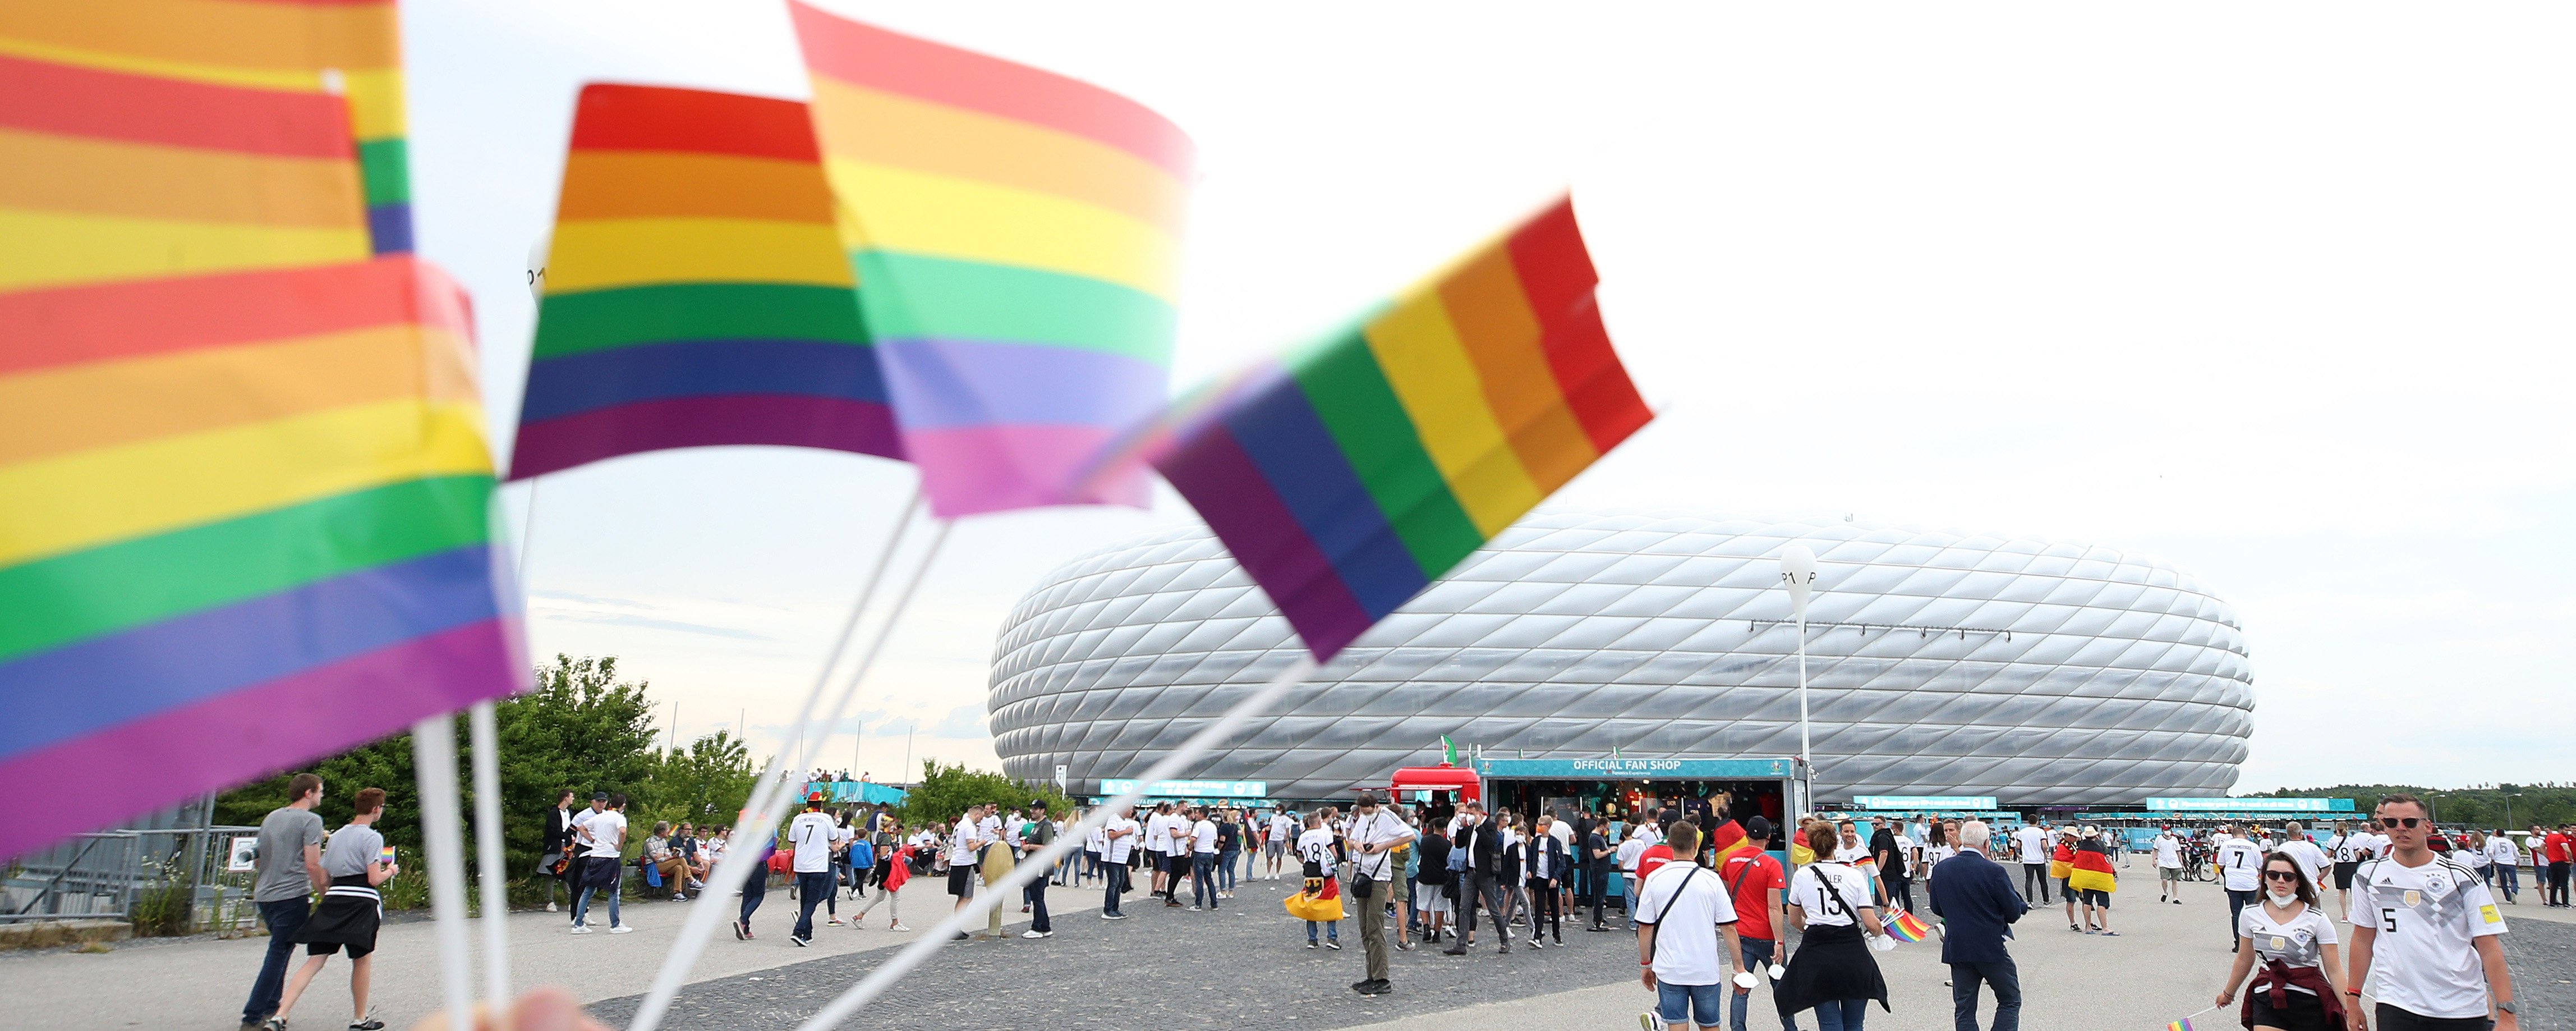 La pobra sanció de la UEFA a Hongria per les actituds homòfobes a l'Eurocopa